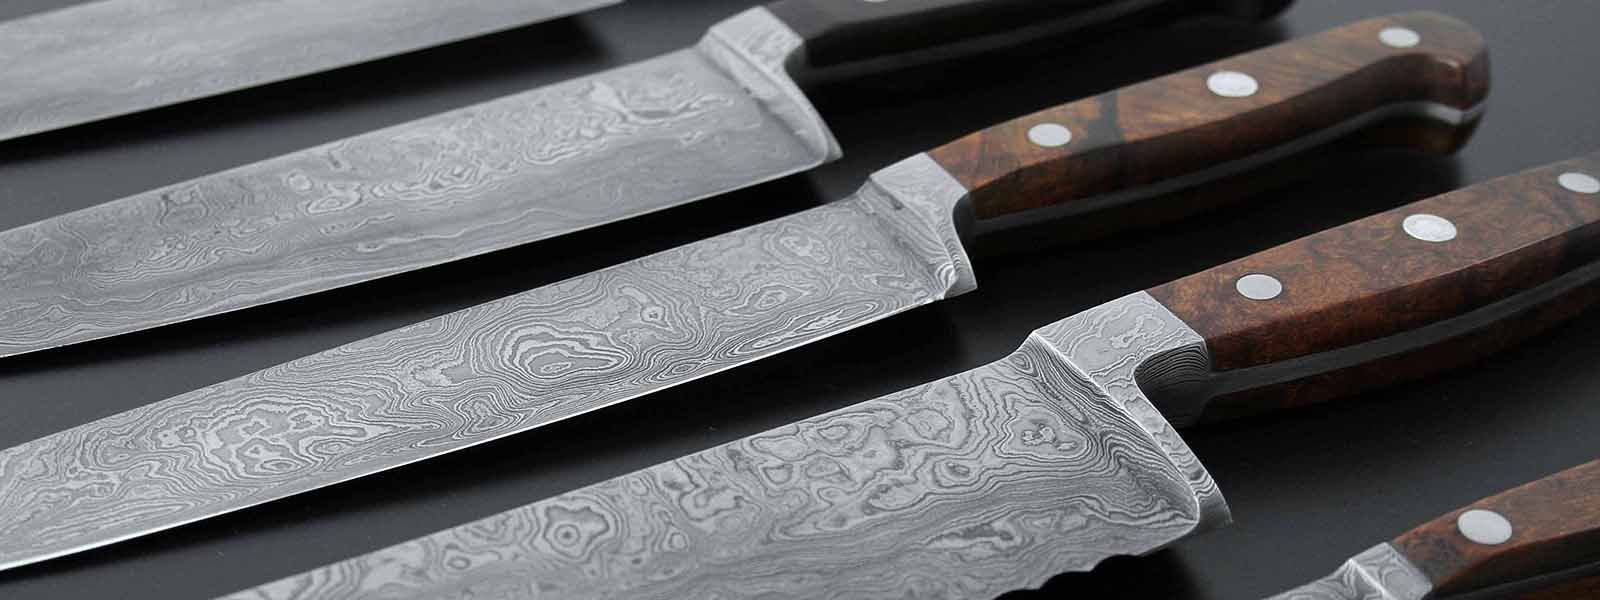 GUEDE -  уникальные ножи ручной работы из Solingen Германия